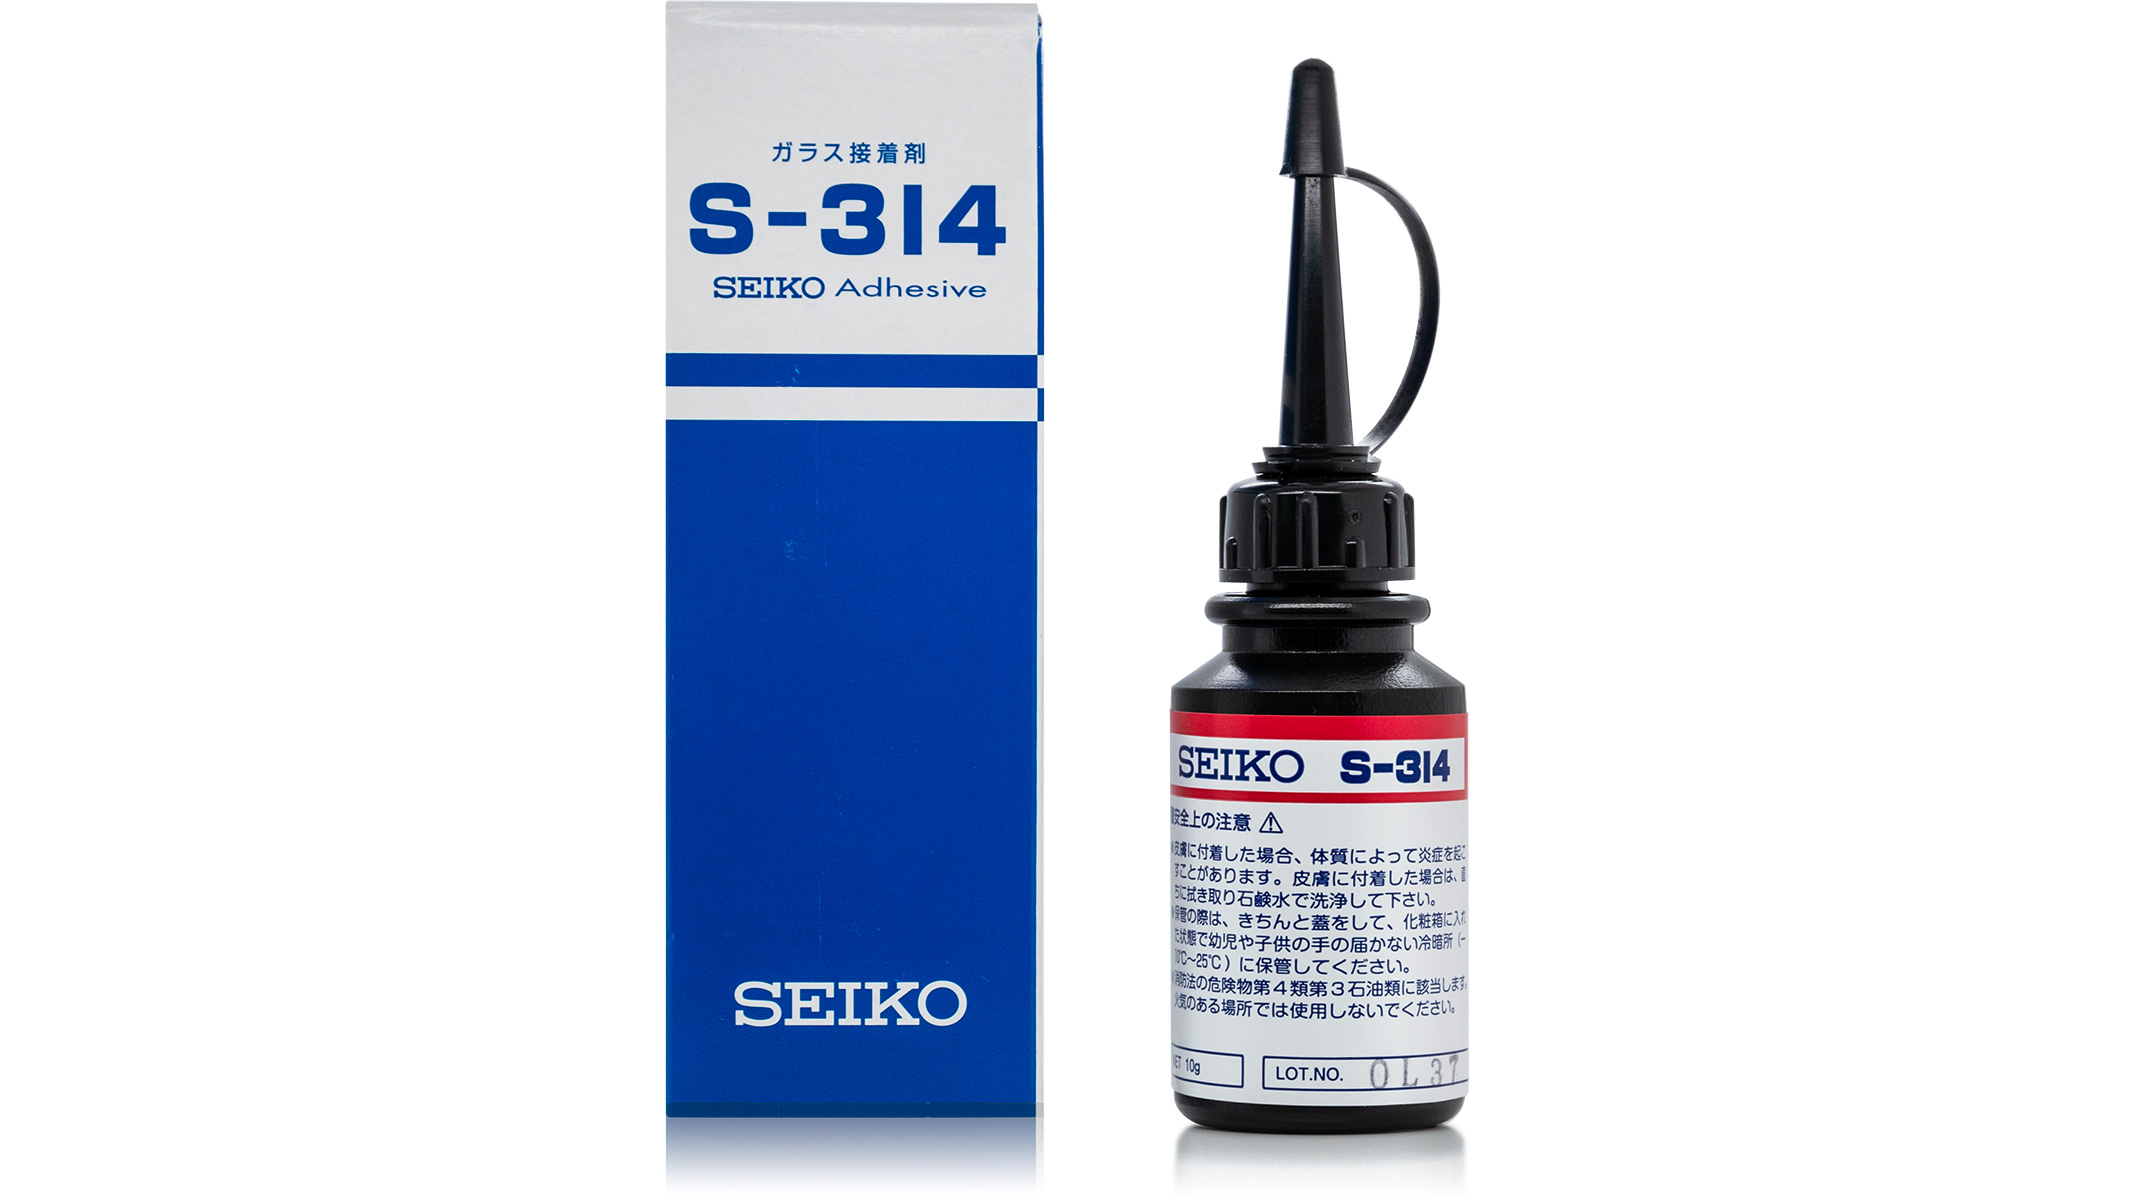 Seiko S-314 UV adhesive, 10 g